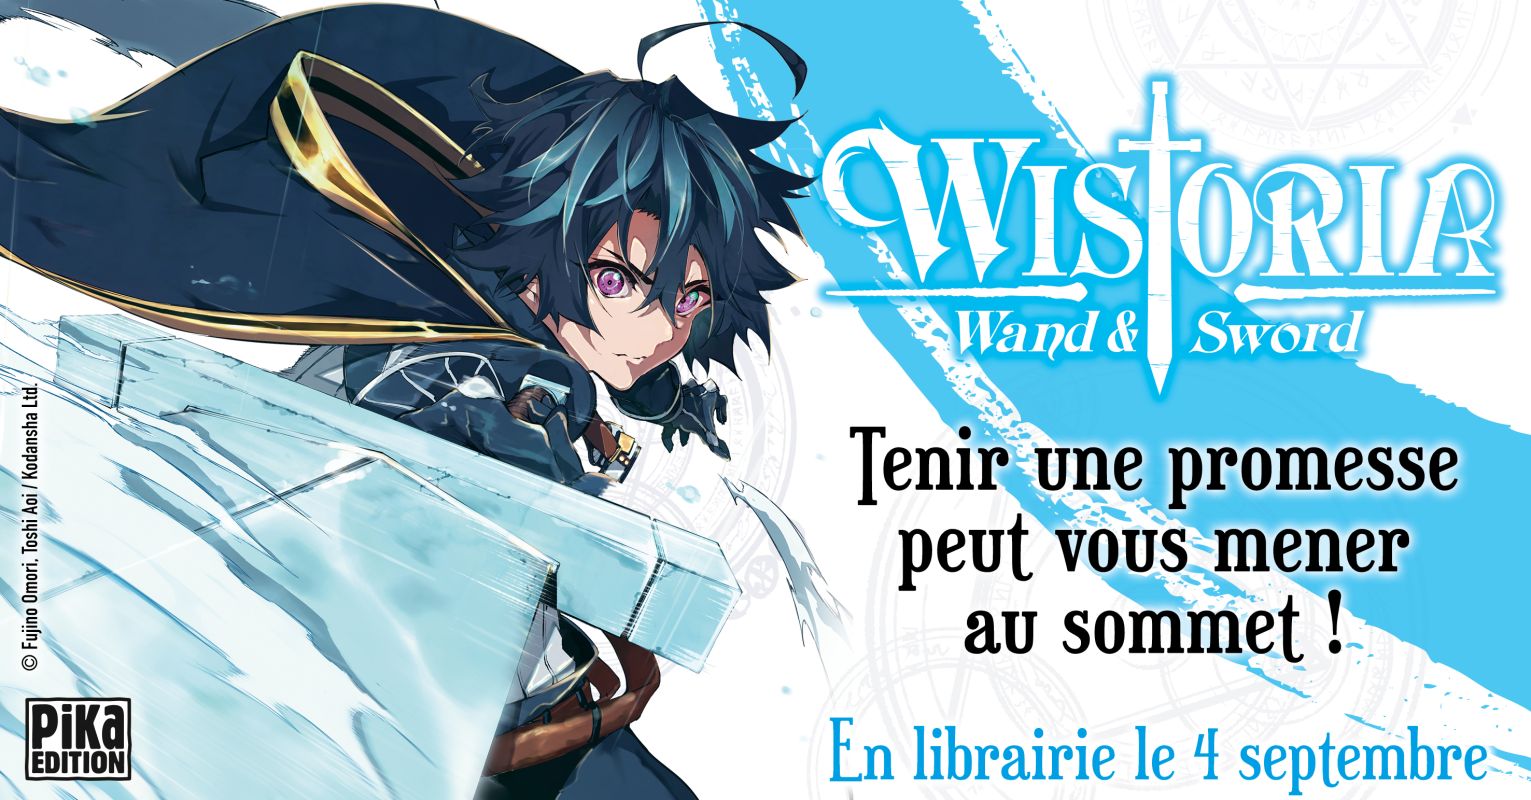 Wistoria - Wand and Sword : un nouveau shonen pour Pika Édition